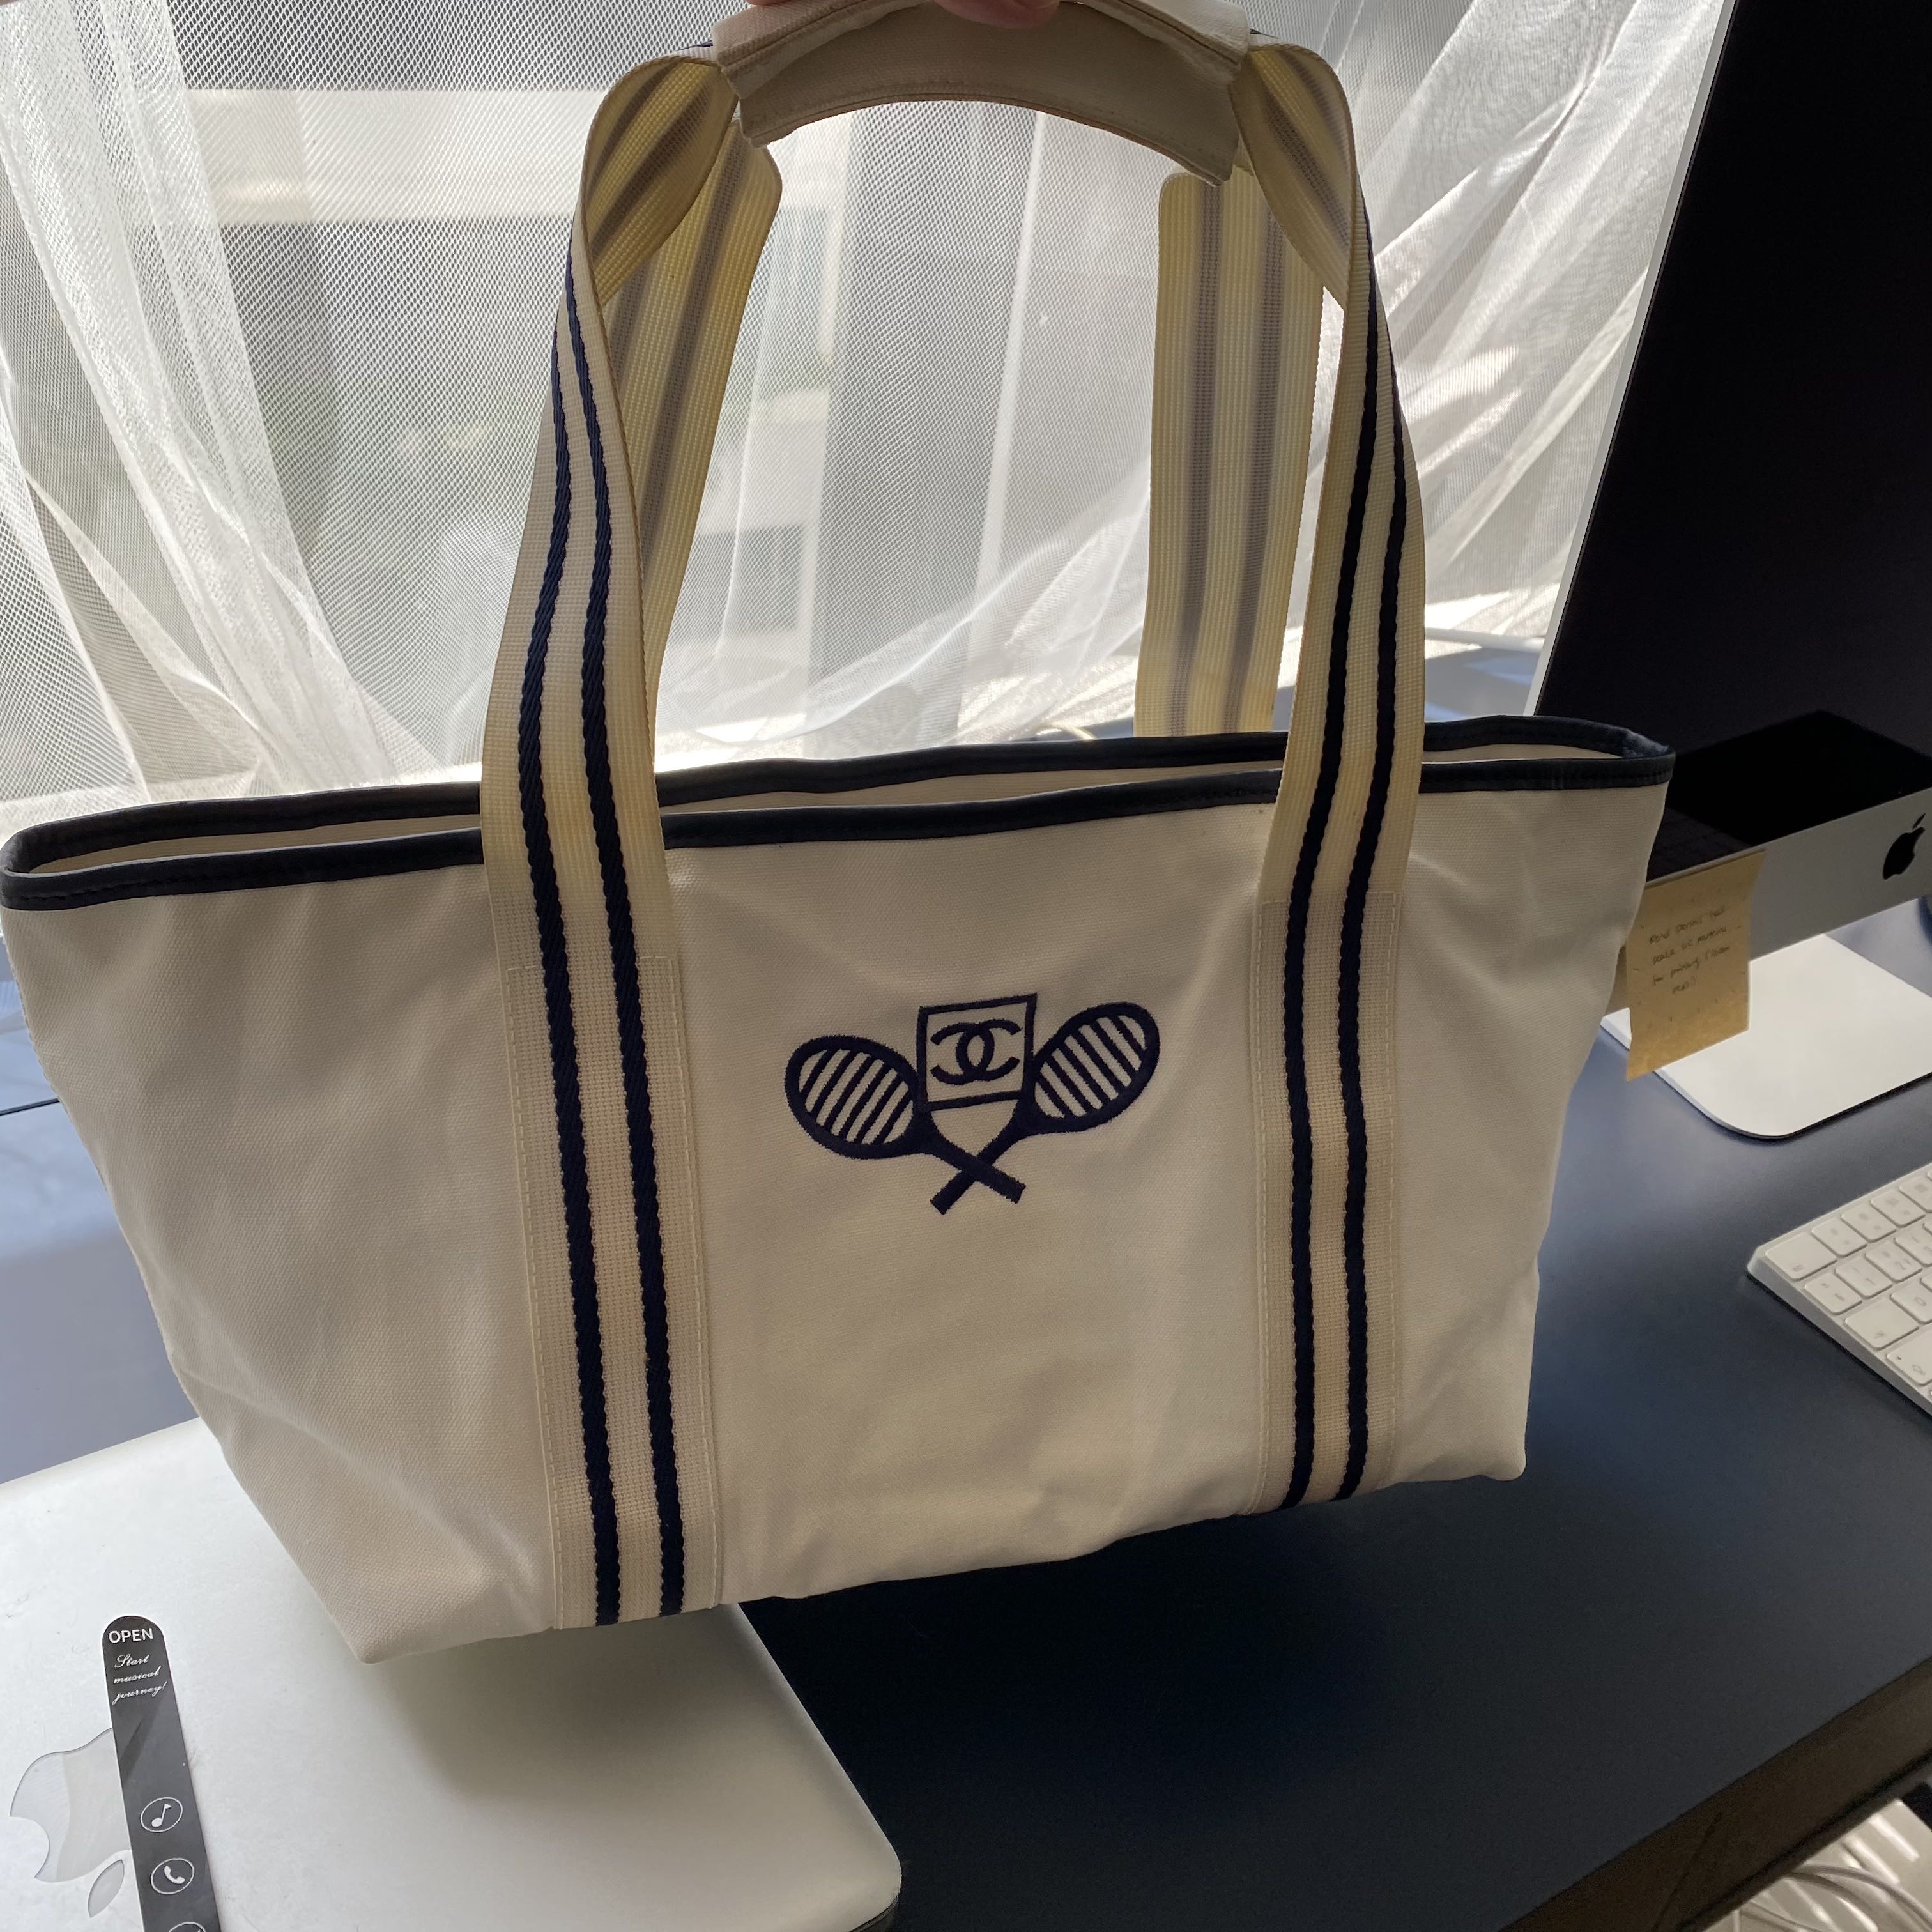 Chanel Sport Ligne Tennis Tote - Blue Totes, Handbags - CHA820807